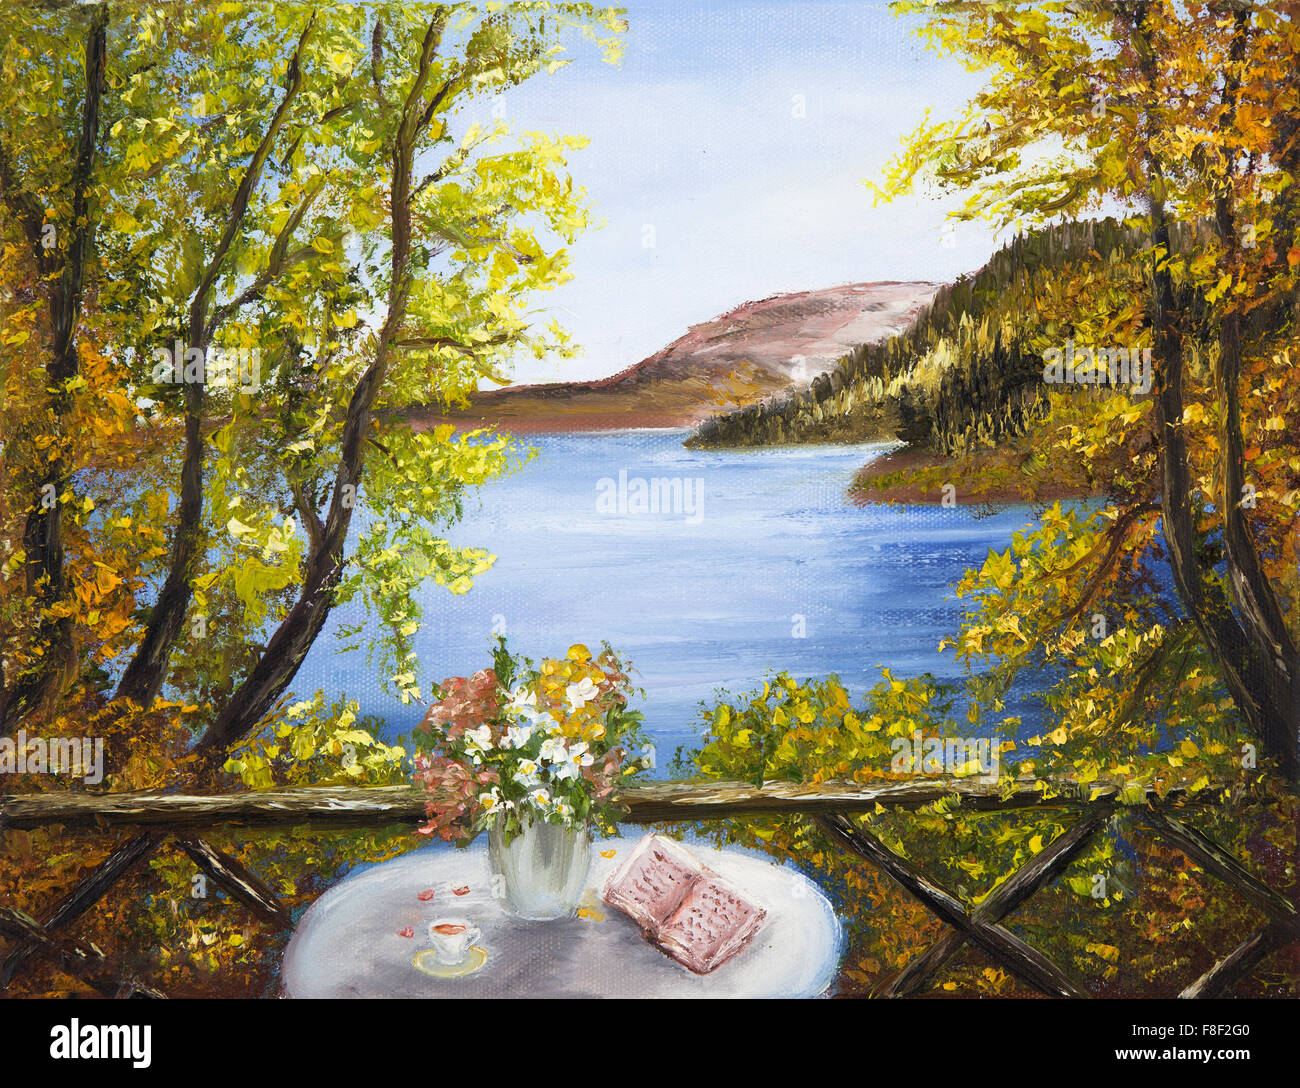 Original Ölgemälde zeigt Tabelle mit Blumen und Buch vor der schönen See in den Bergen auf Leinwand. Frühling Landschaft. Stockfoto